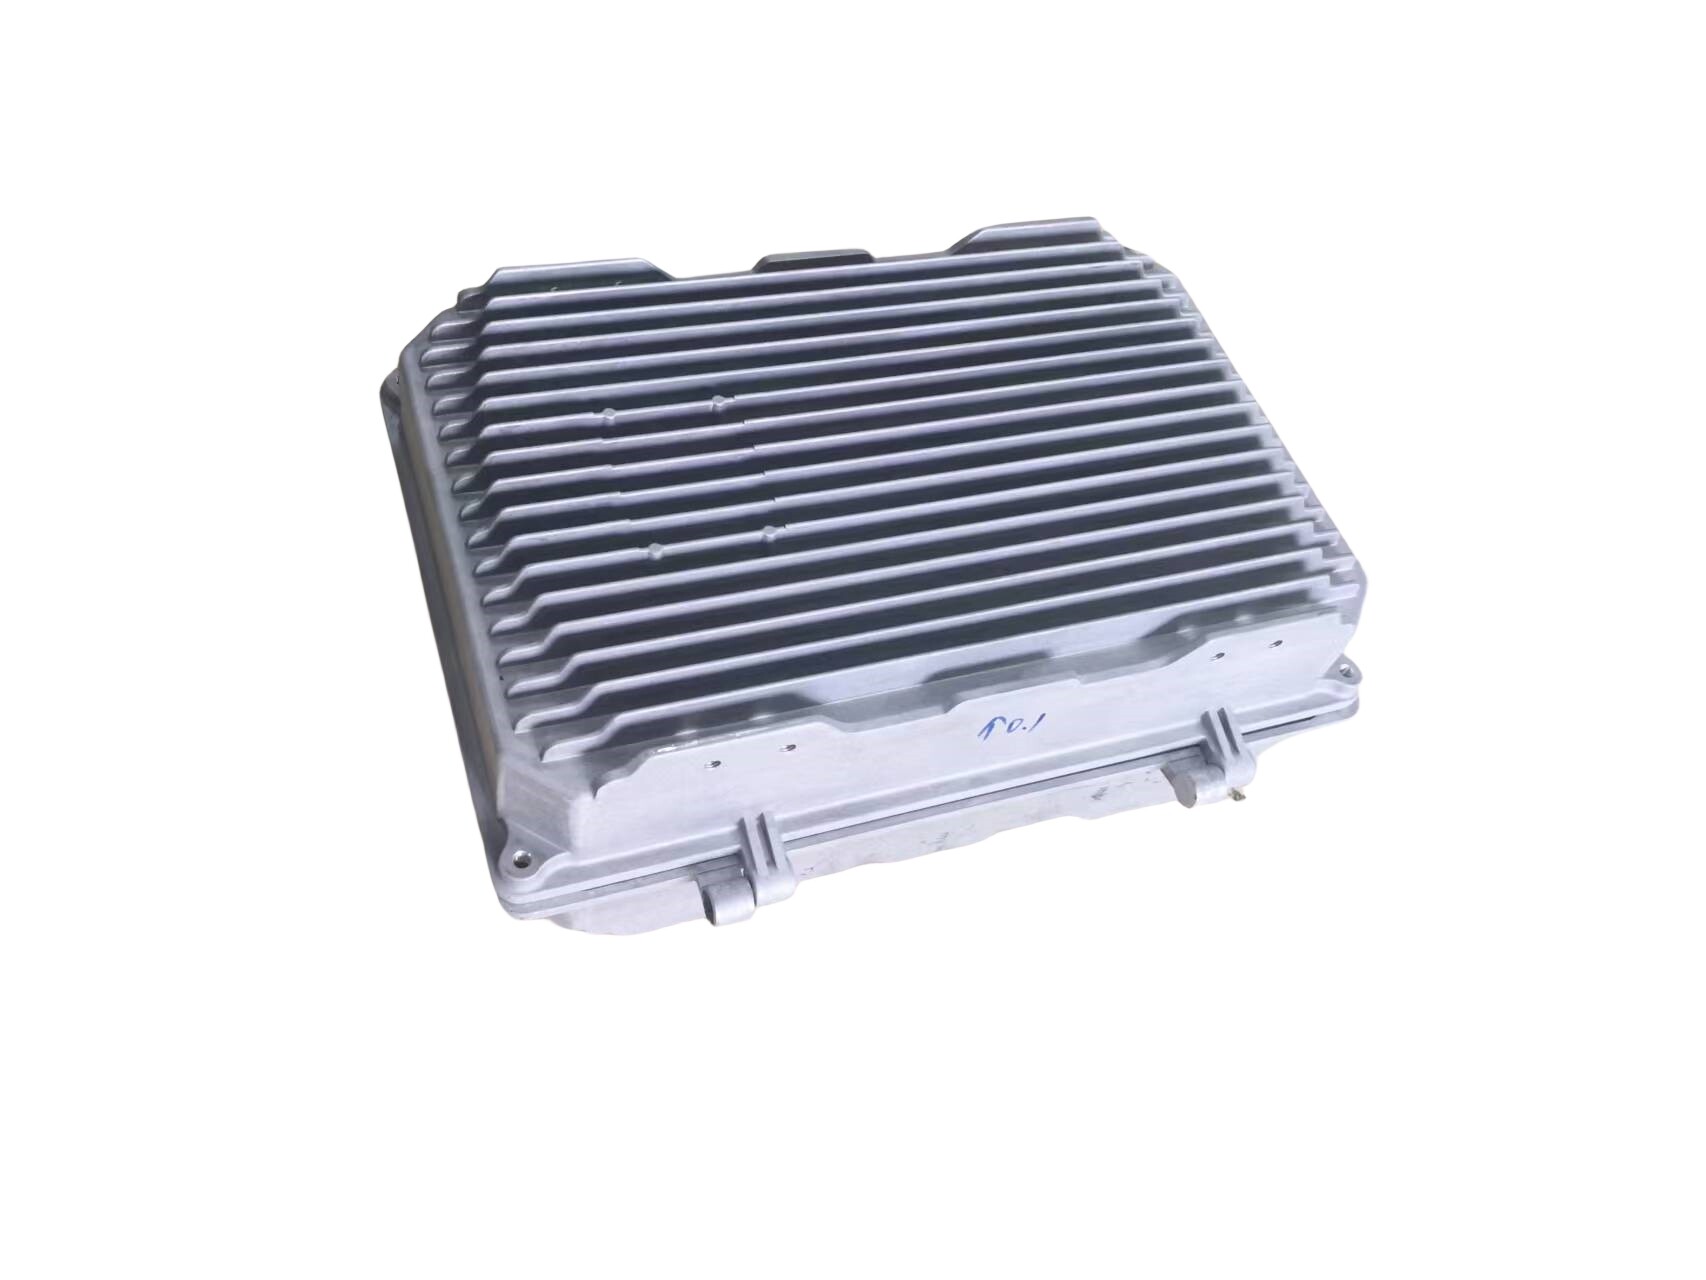 Advantages of Aluminum Die-Cast 5G Communication Box